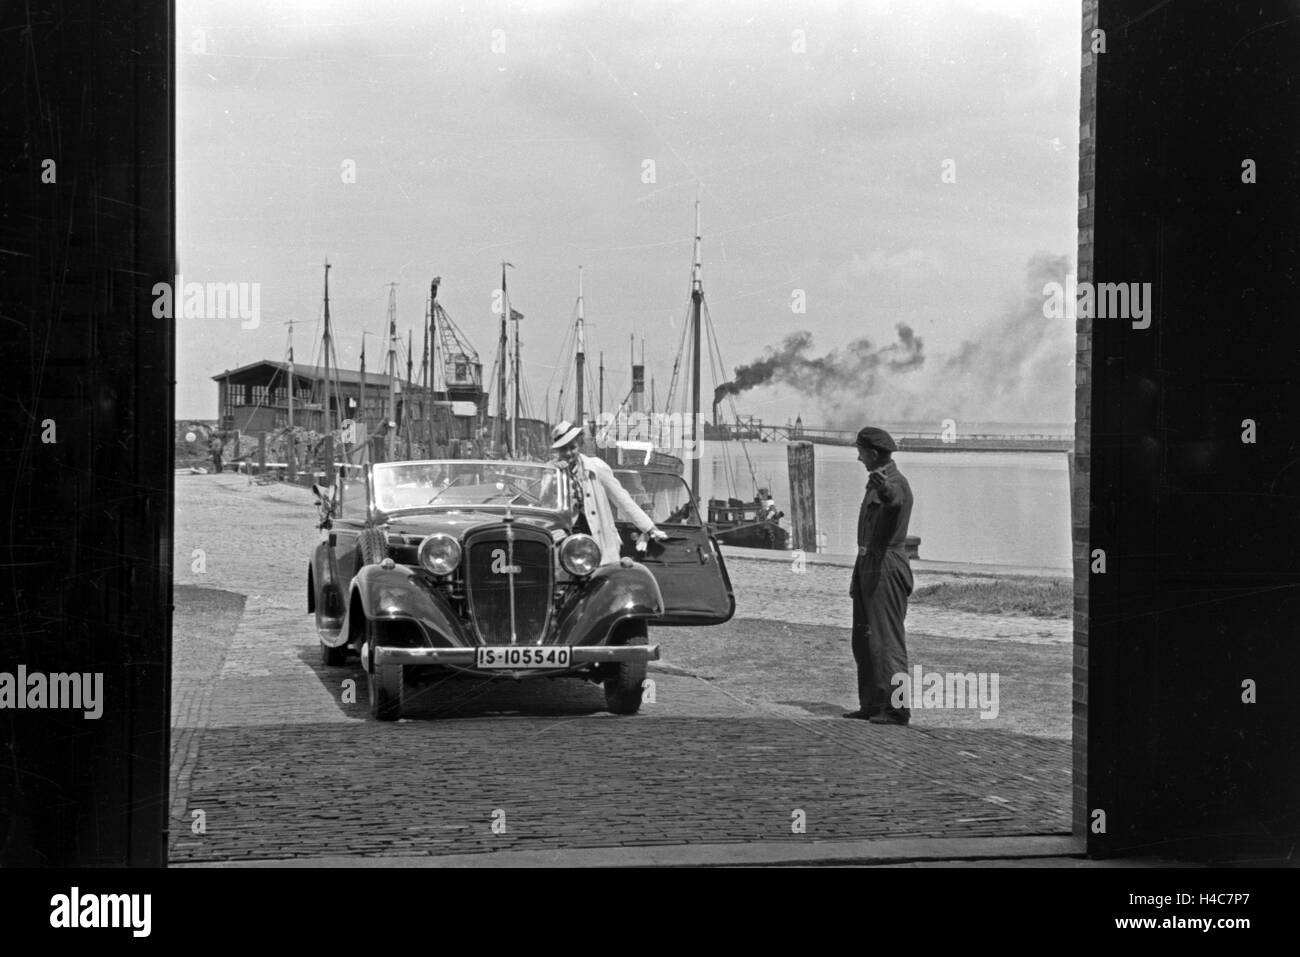 Eine Frau fährt ihr Audi Cabrio in eine der Garagen am Meer in Norddeich, Deutschland 1930er Jahre. Una donna alla guida la sua Audi convertibel in uno dei garage di Norddeich, Germania 1930 Foto Stock